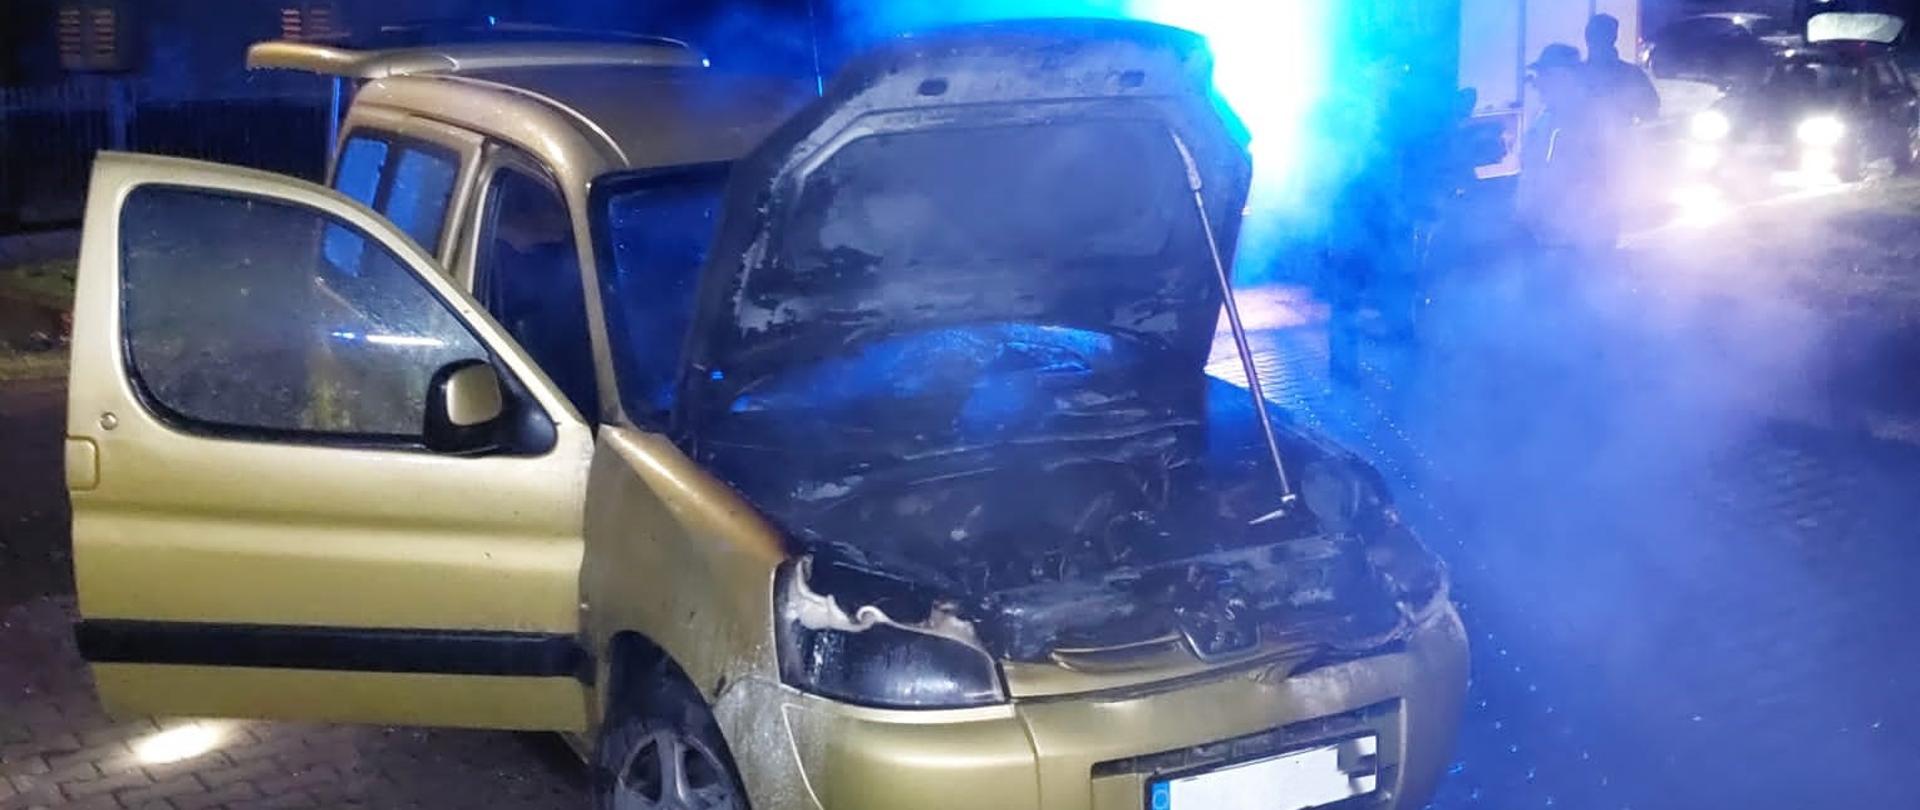 Zdjęcie przedstawia spalony samochód osobowy. Pod otwarta maską widać zniszczoną komorę silnika.